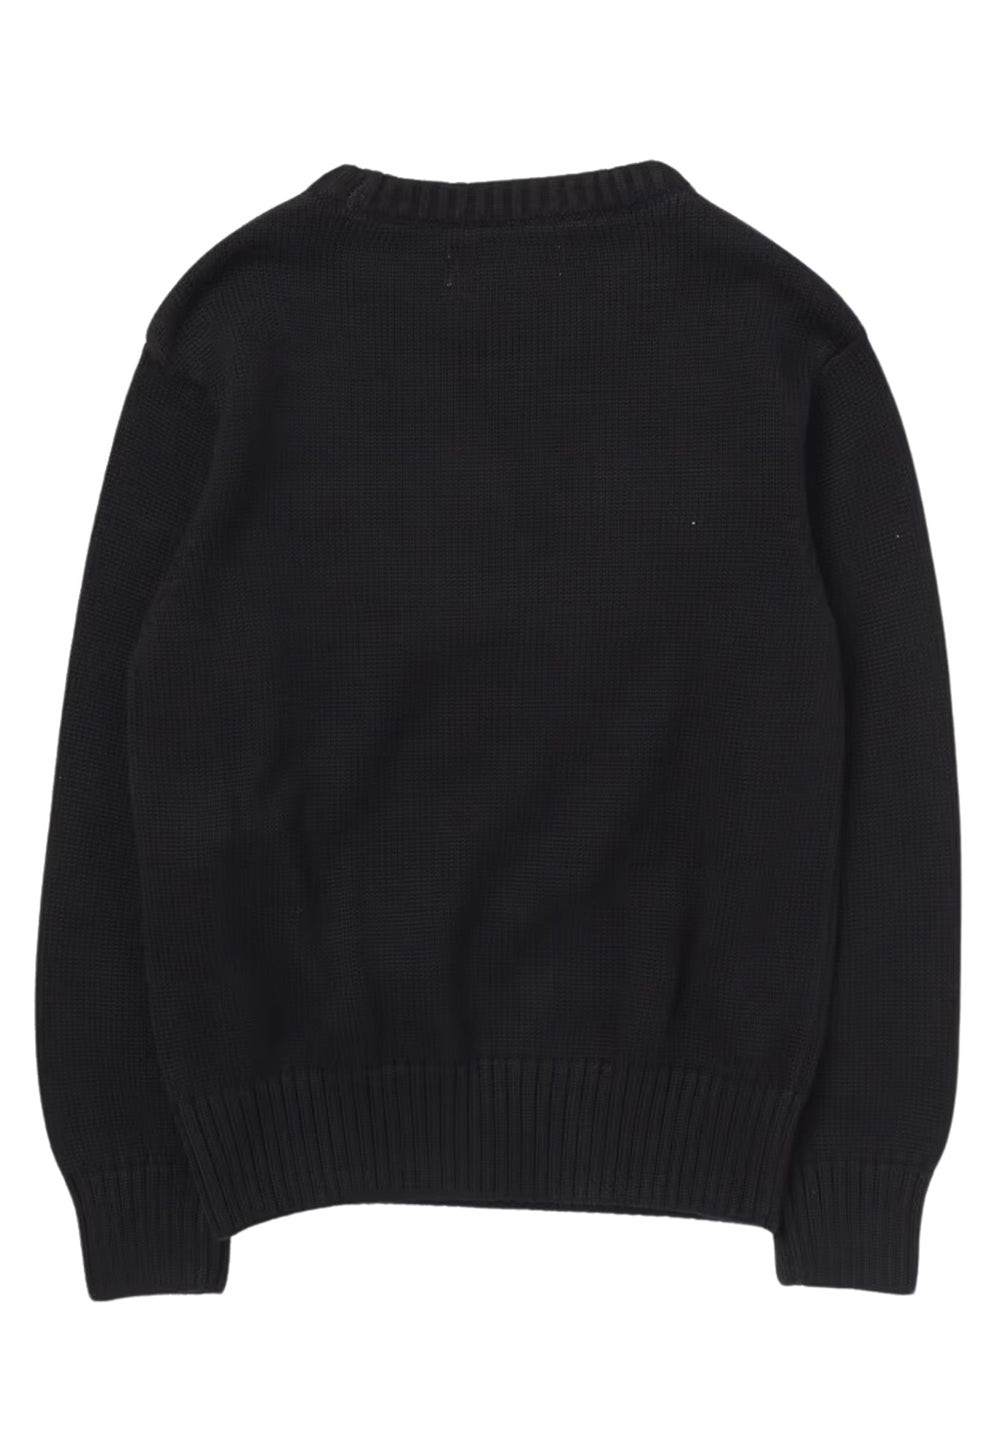 Schwarzer Pullover für Jungen